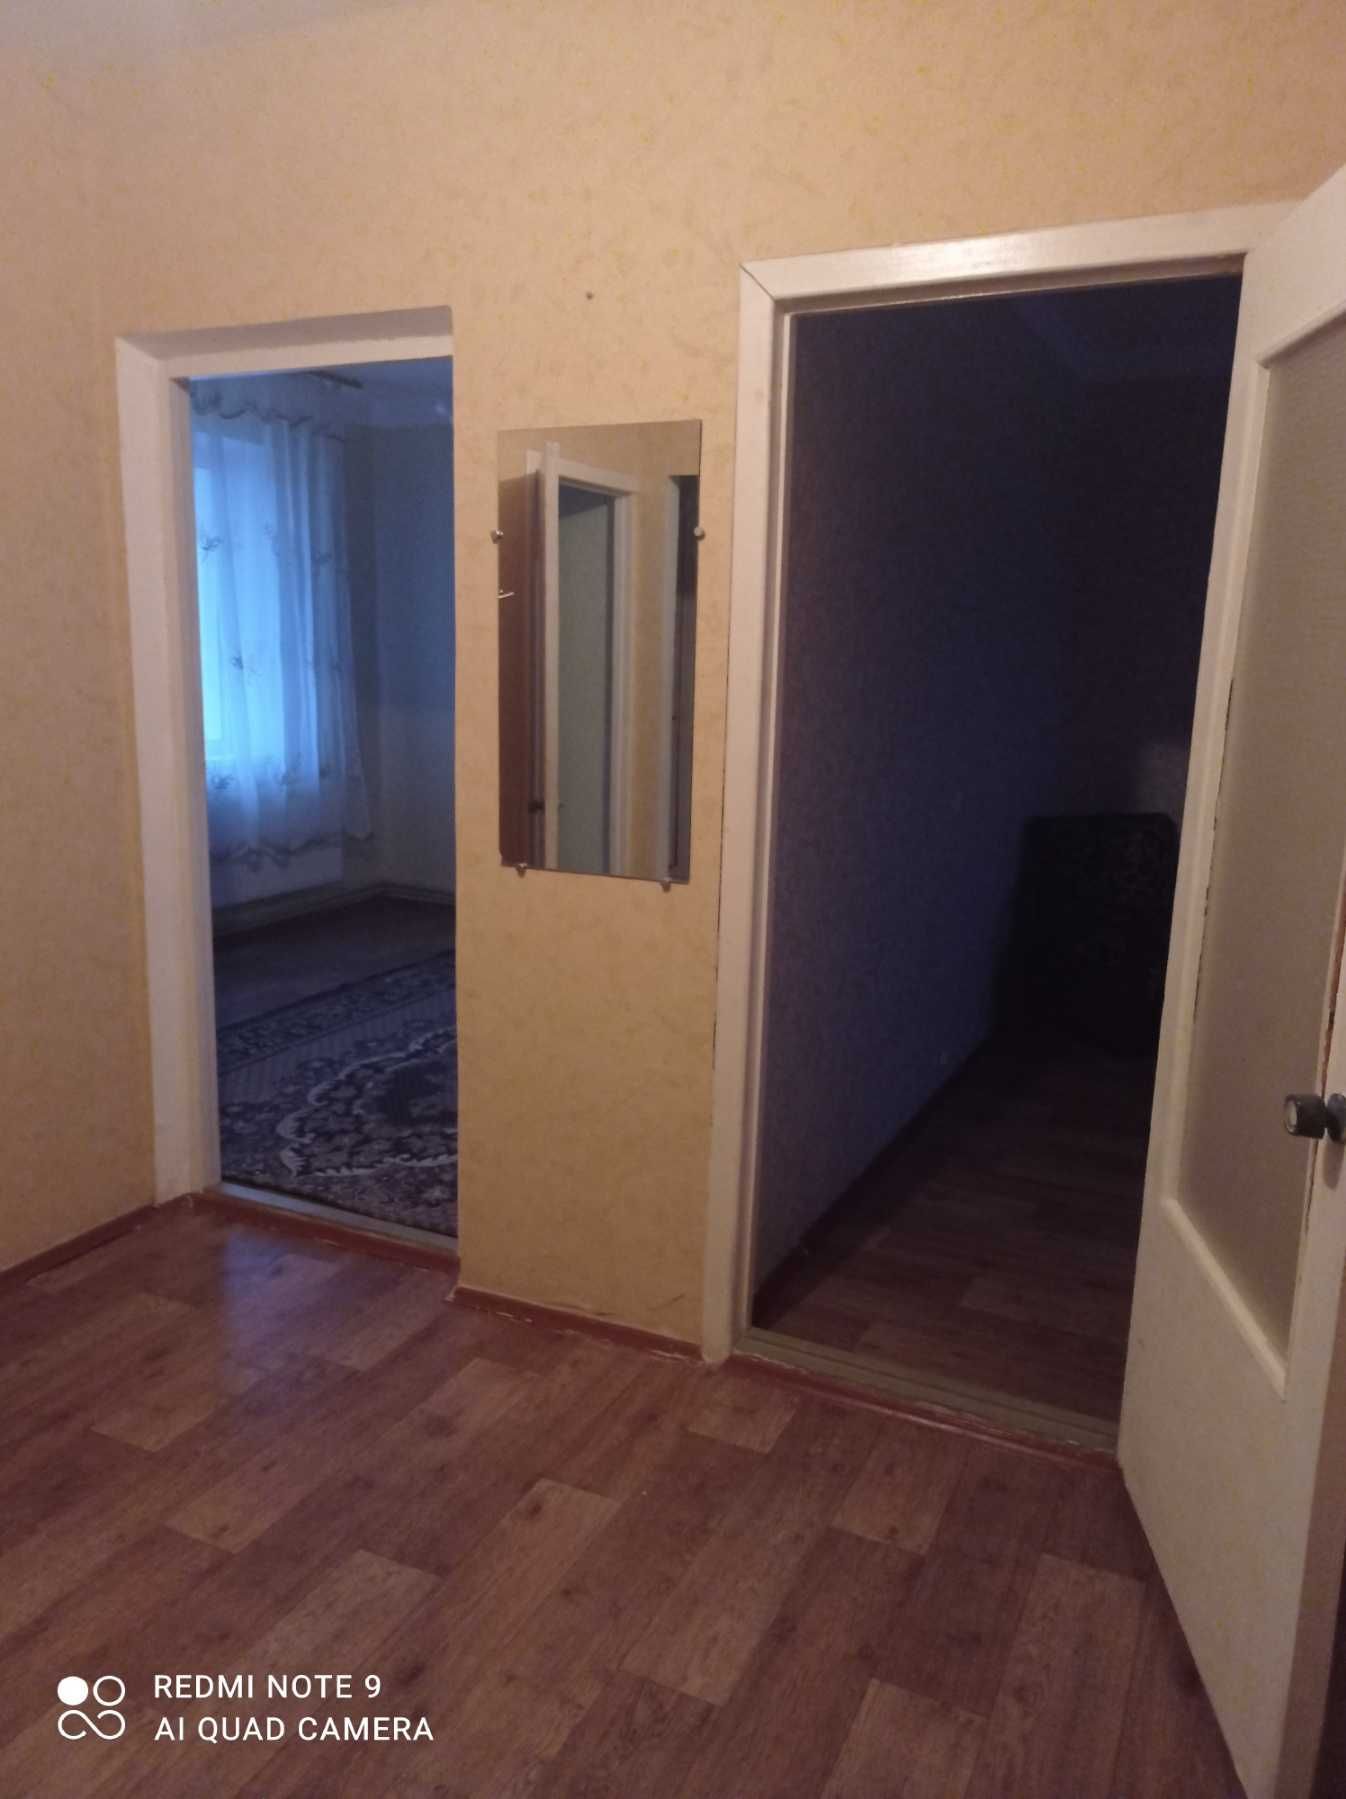 Продам трёхкомнатную квартиру в Галицыново